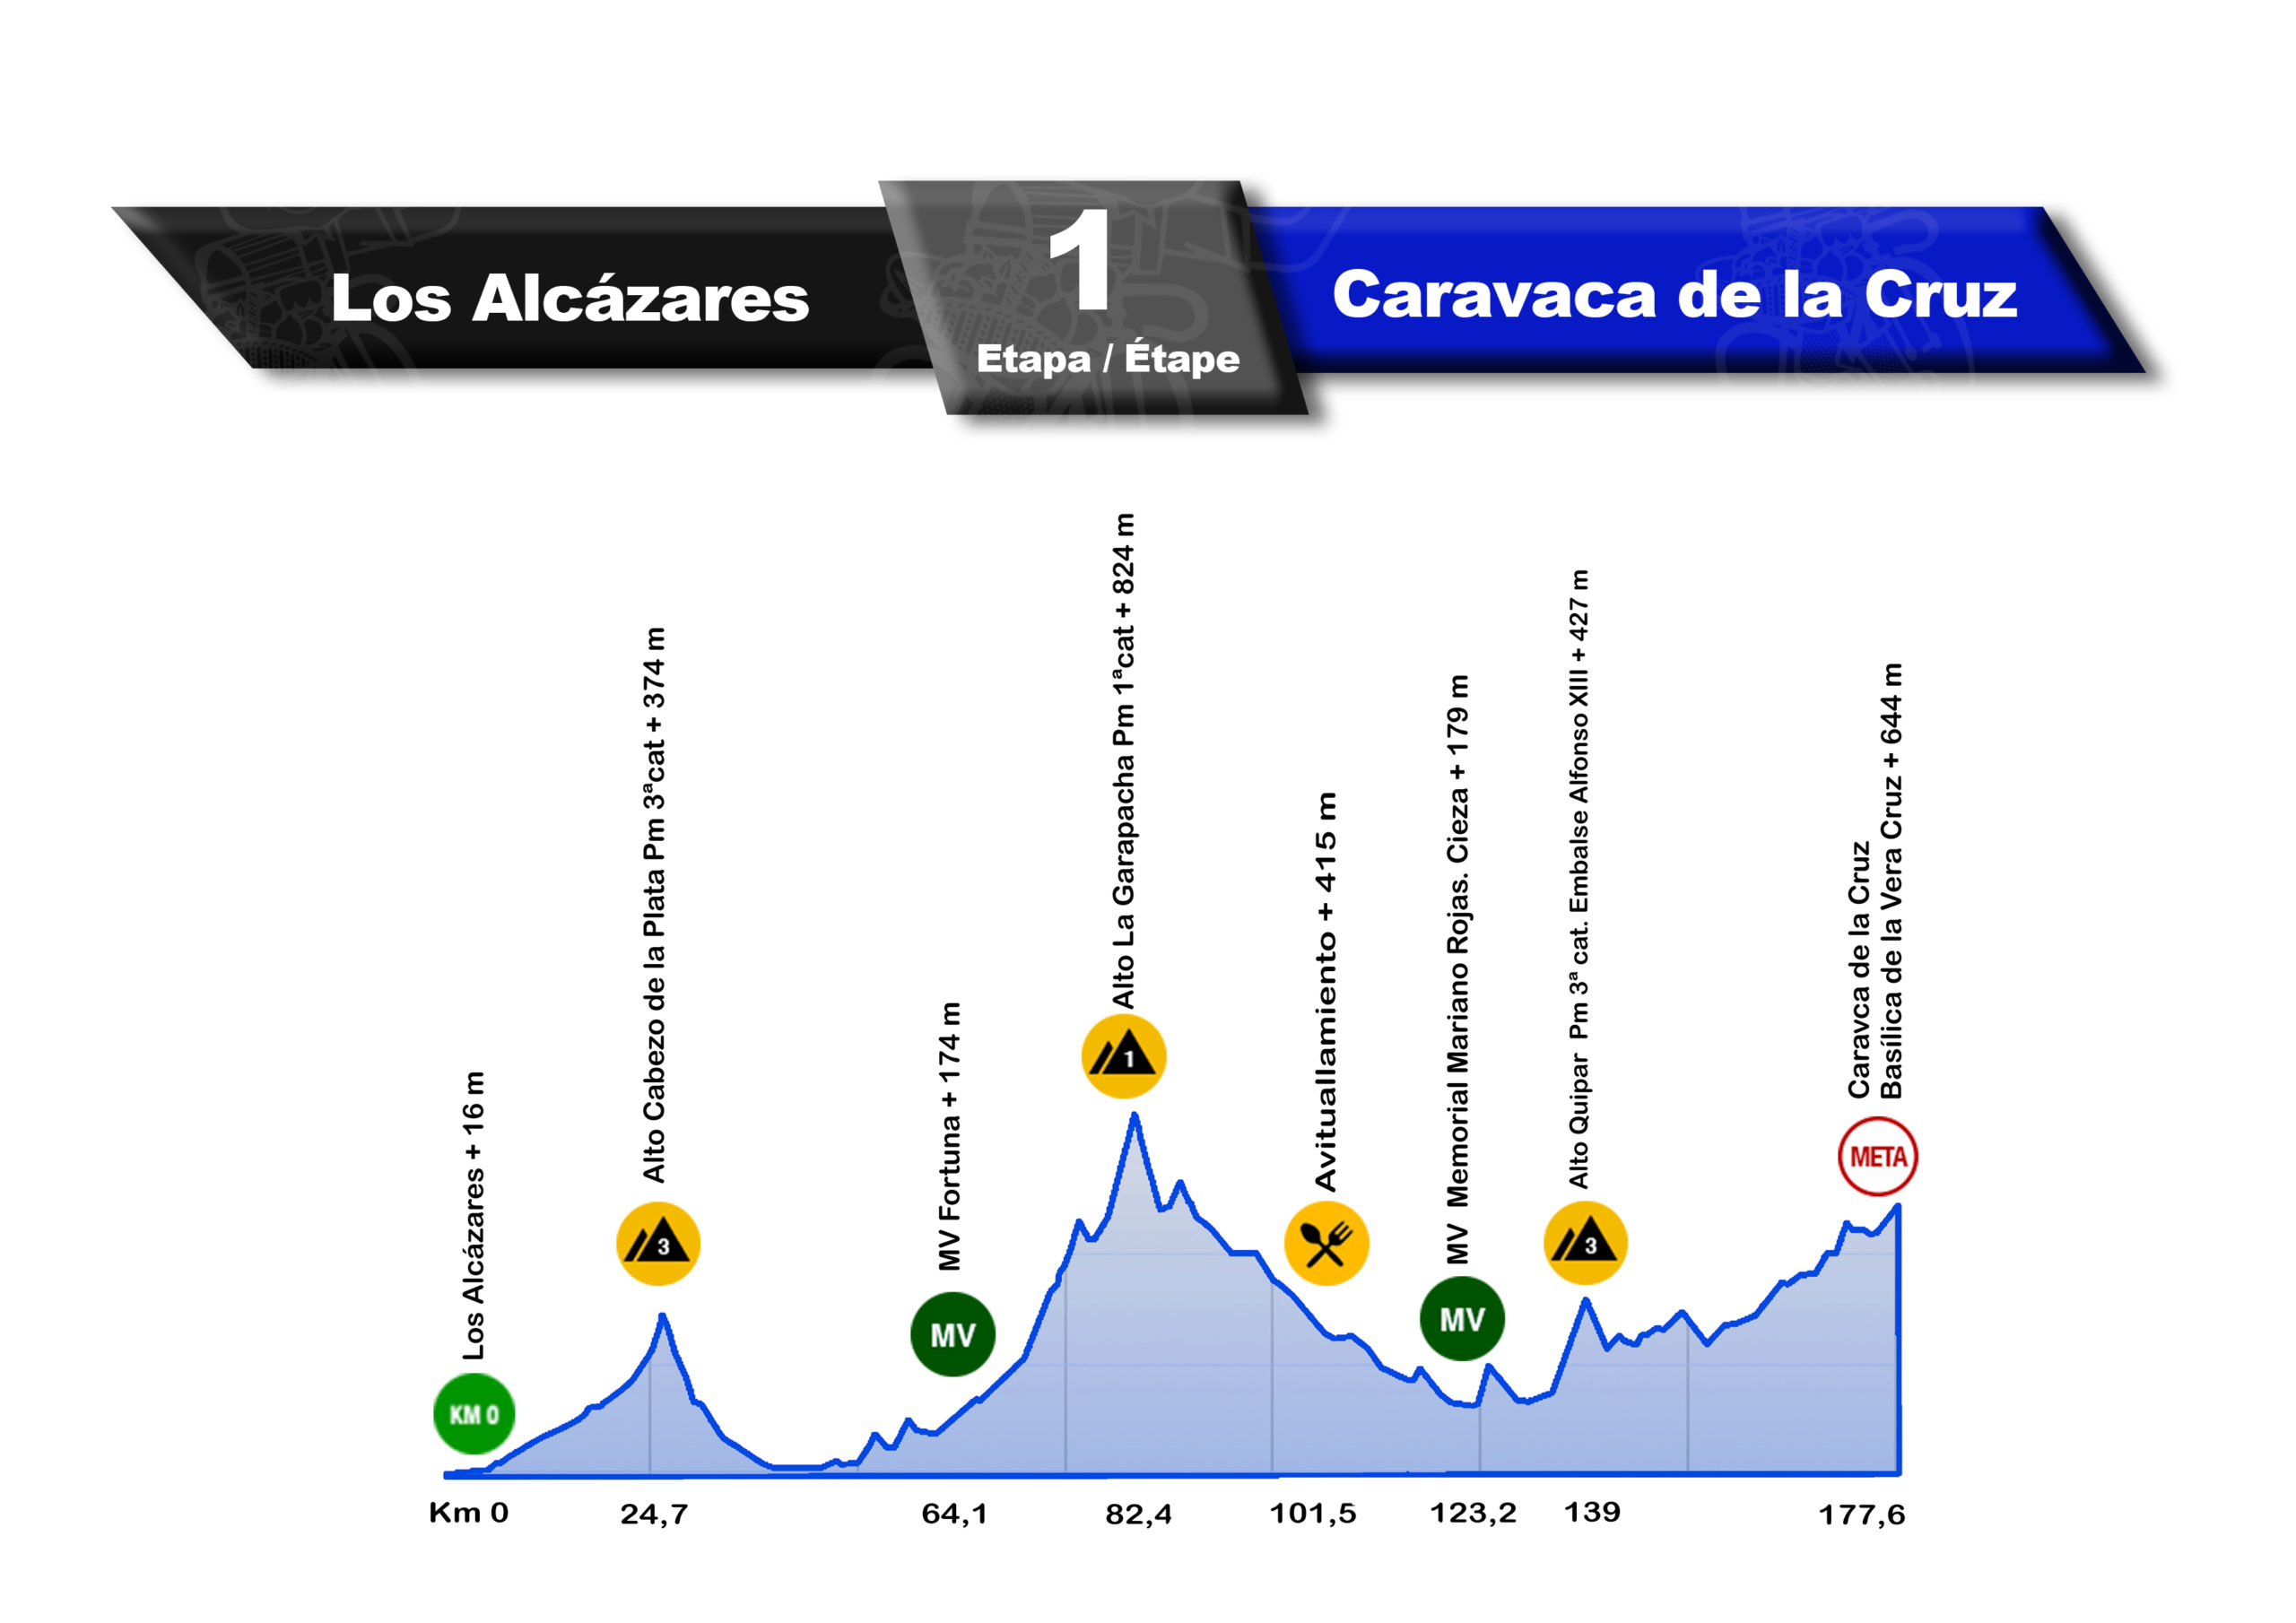 1ª Etapa: Los Alcázares - Caravaca de la Cruz 177,6 Km.